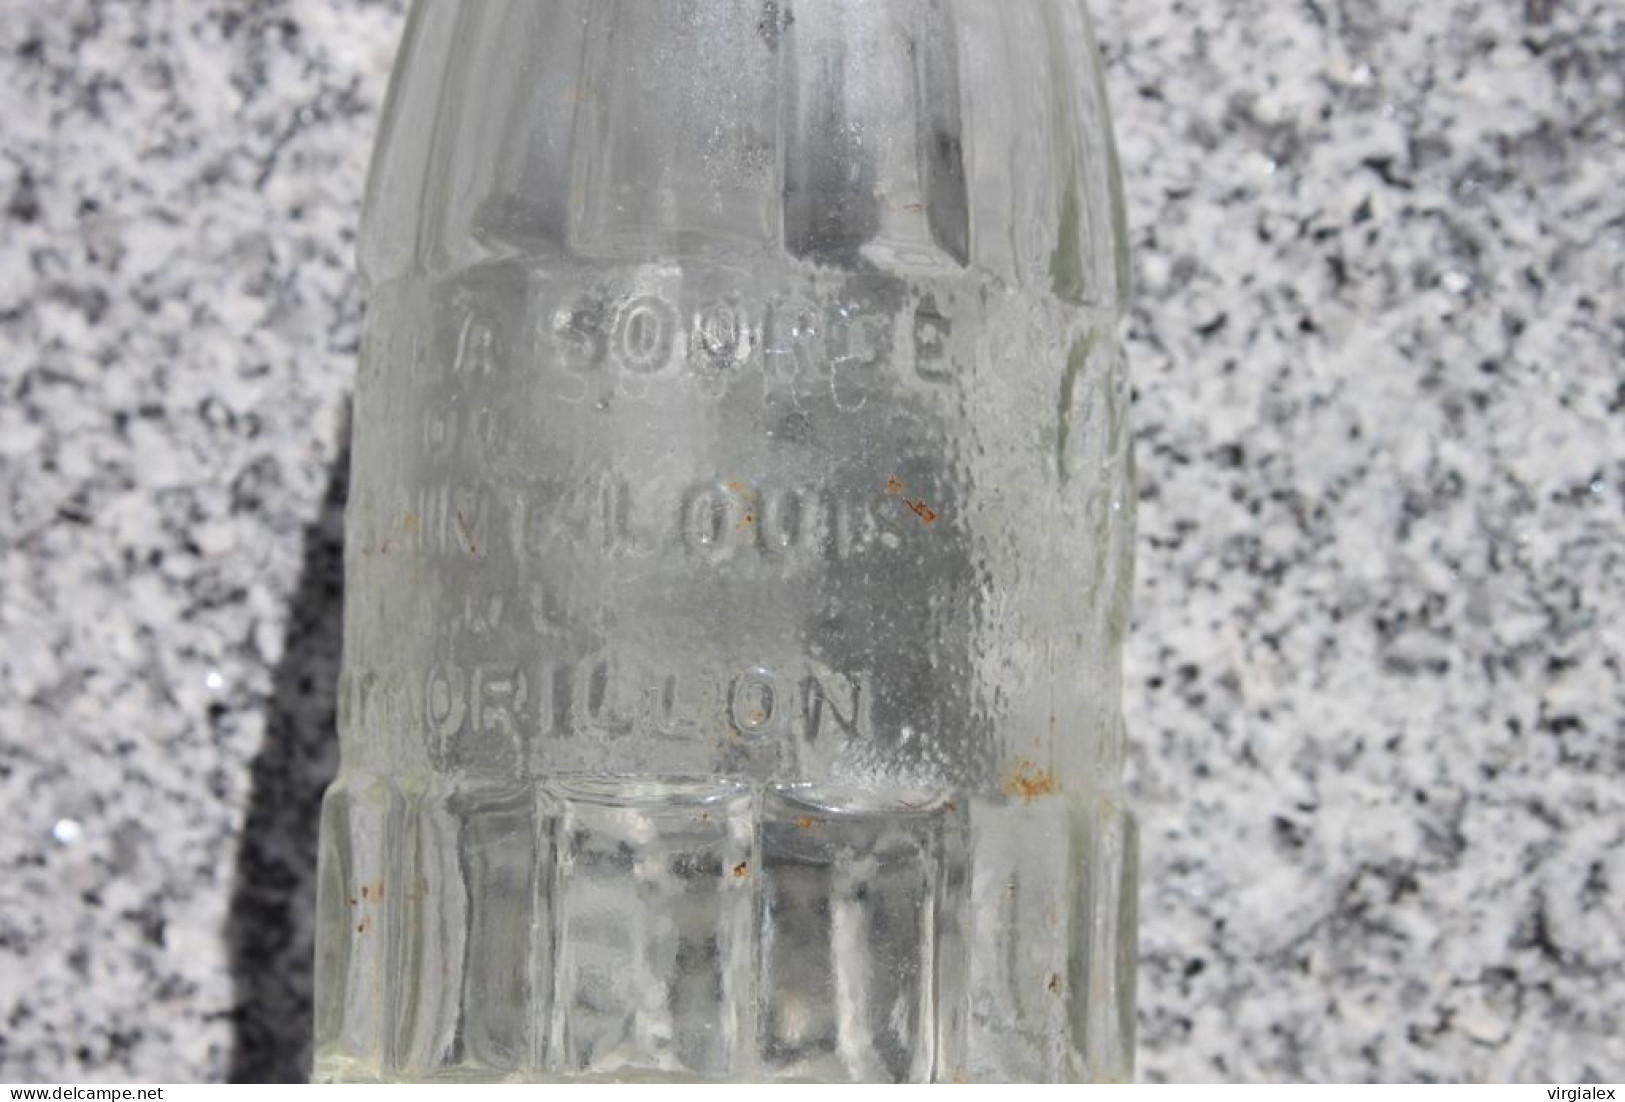 Lot 2 bouteilles anciennes ROC-SAIN - Boisson Ancienne Eau de Source Saint-Louis Montmorillon Vienne